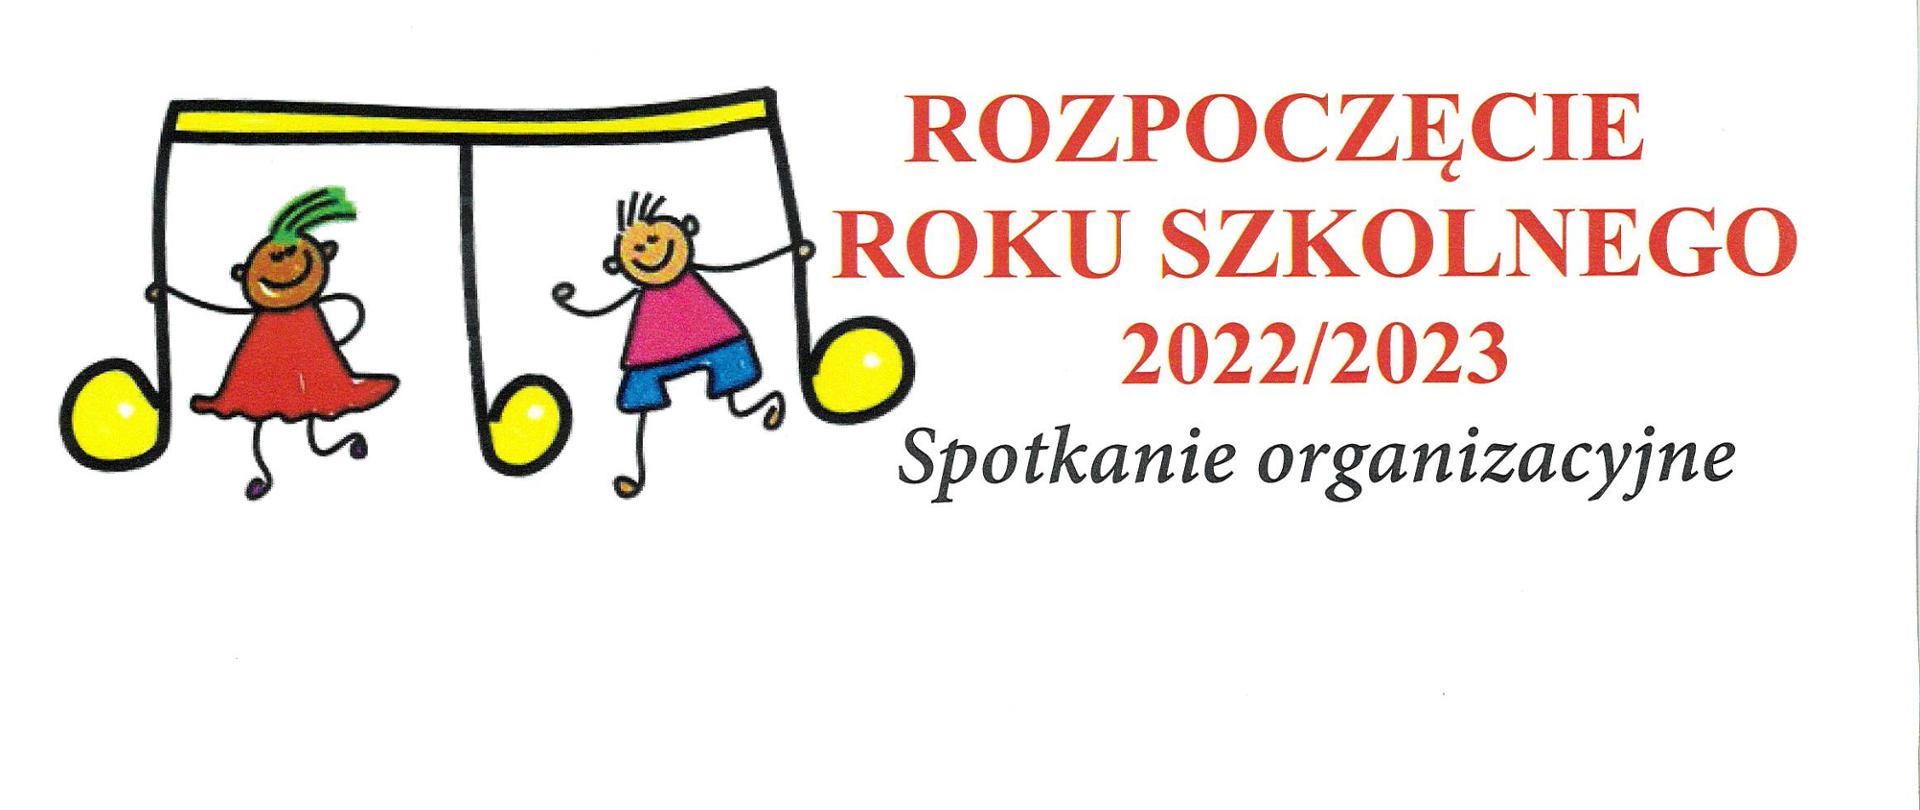 Plakat na białym tle z kolorowym tekstem Rozpoczęcie roku szkolnego 2022/2023 Spotkanie organizacyjne. Z lewej strony grafika wielkich nutek, których trzymają się wizerunki dzieci.